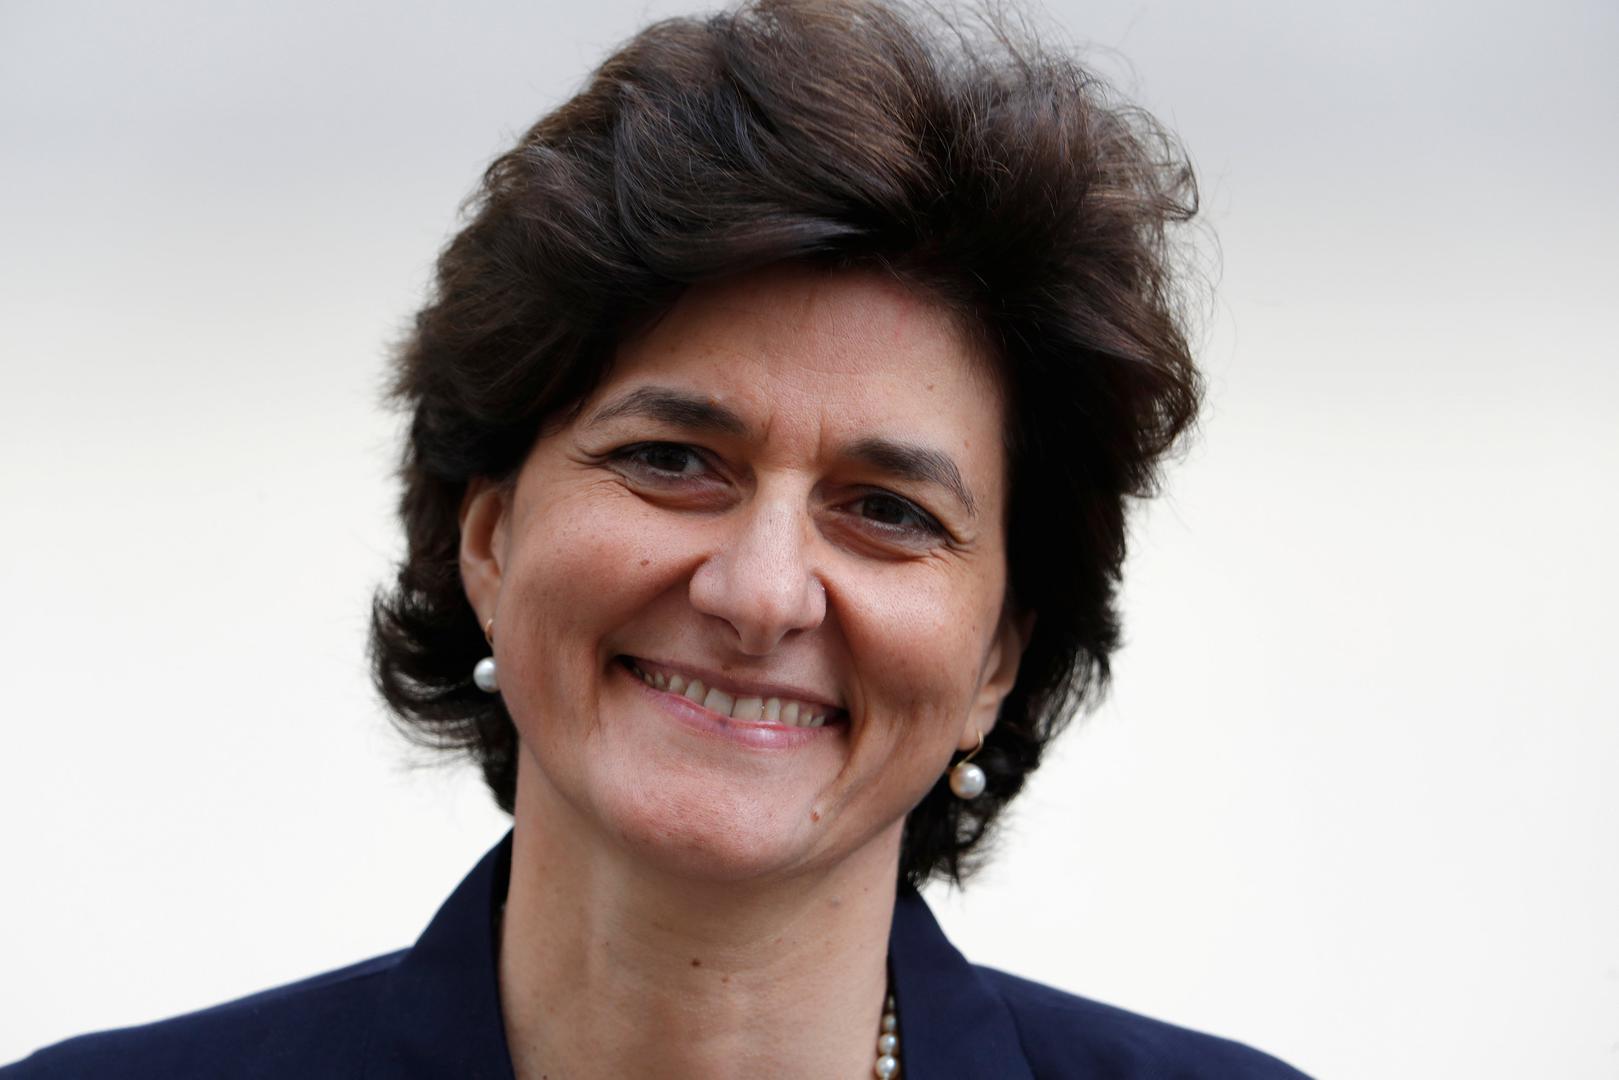 Sylvie Goulard preuzela je dužnost ministra obrane od Le Driana, koji odlazi na mjesto ministra za Europu i vanjske poslove